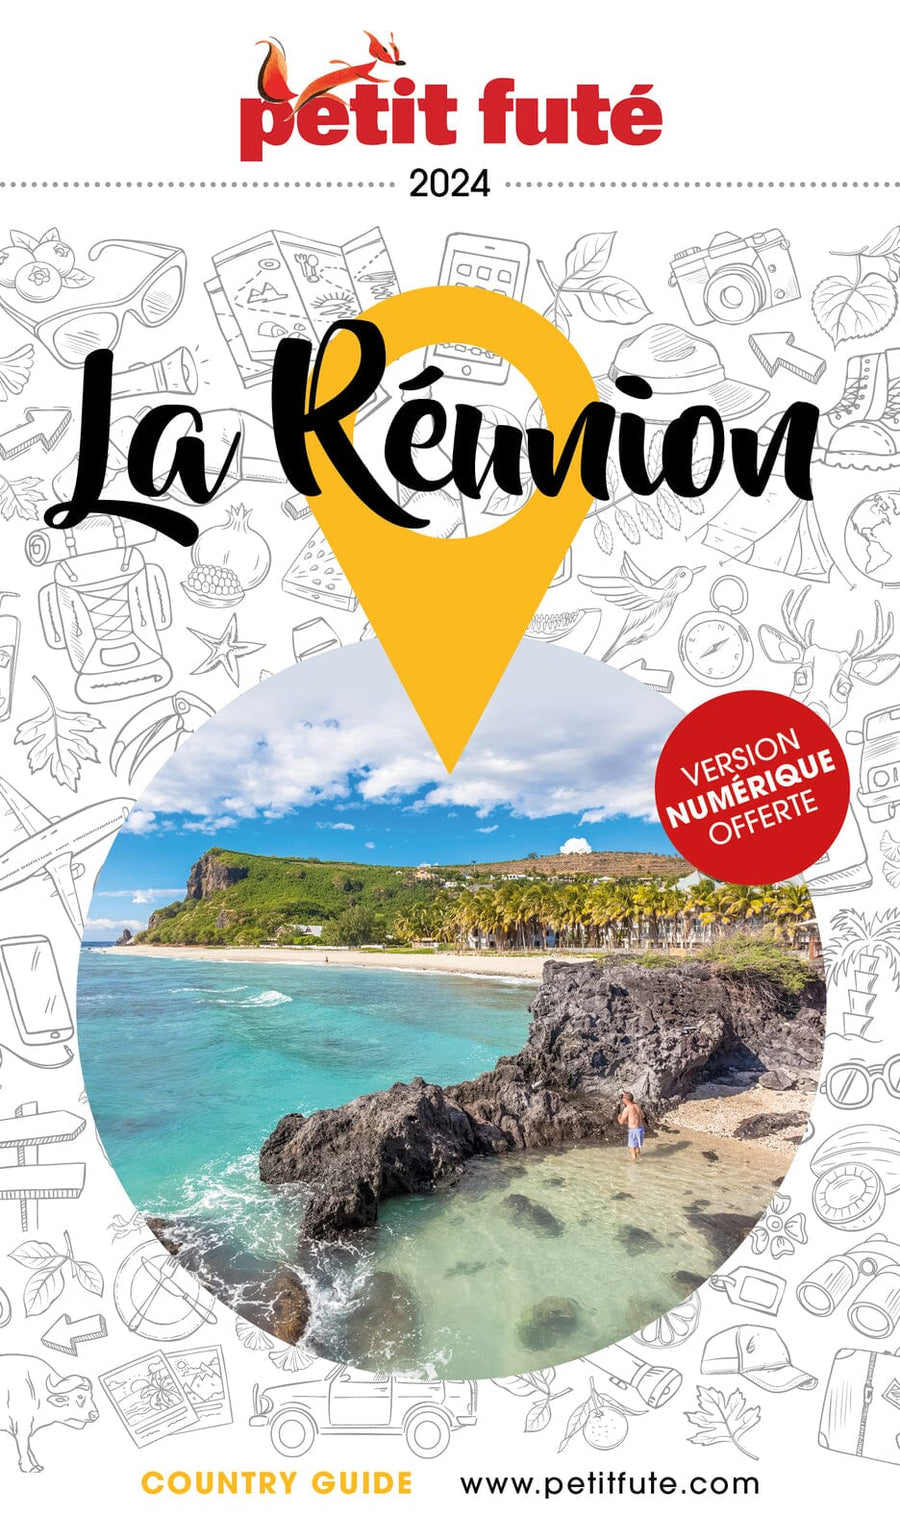 Guide de voyage - La Réunion 2024 | Petit Futé guide de voyage Petit Futé 